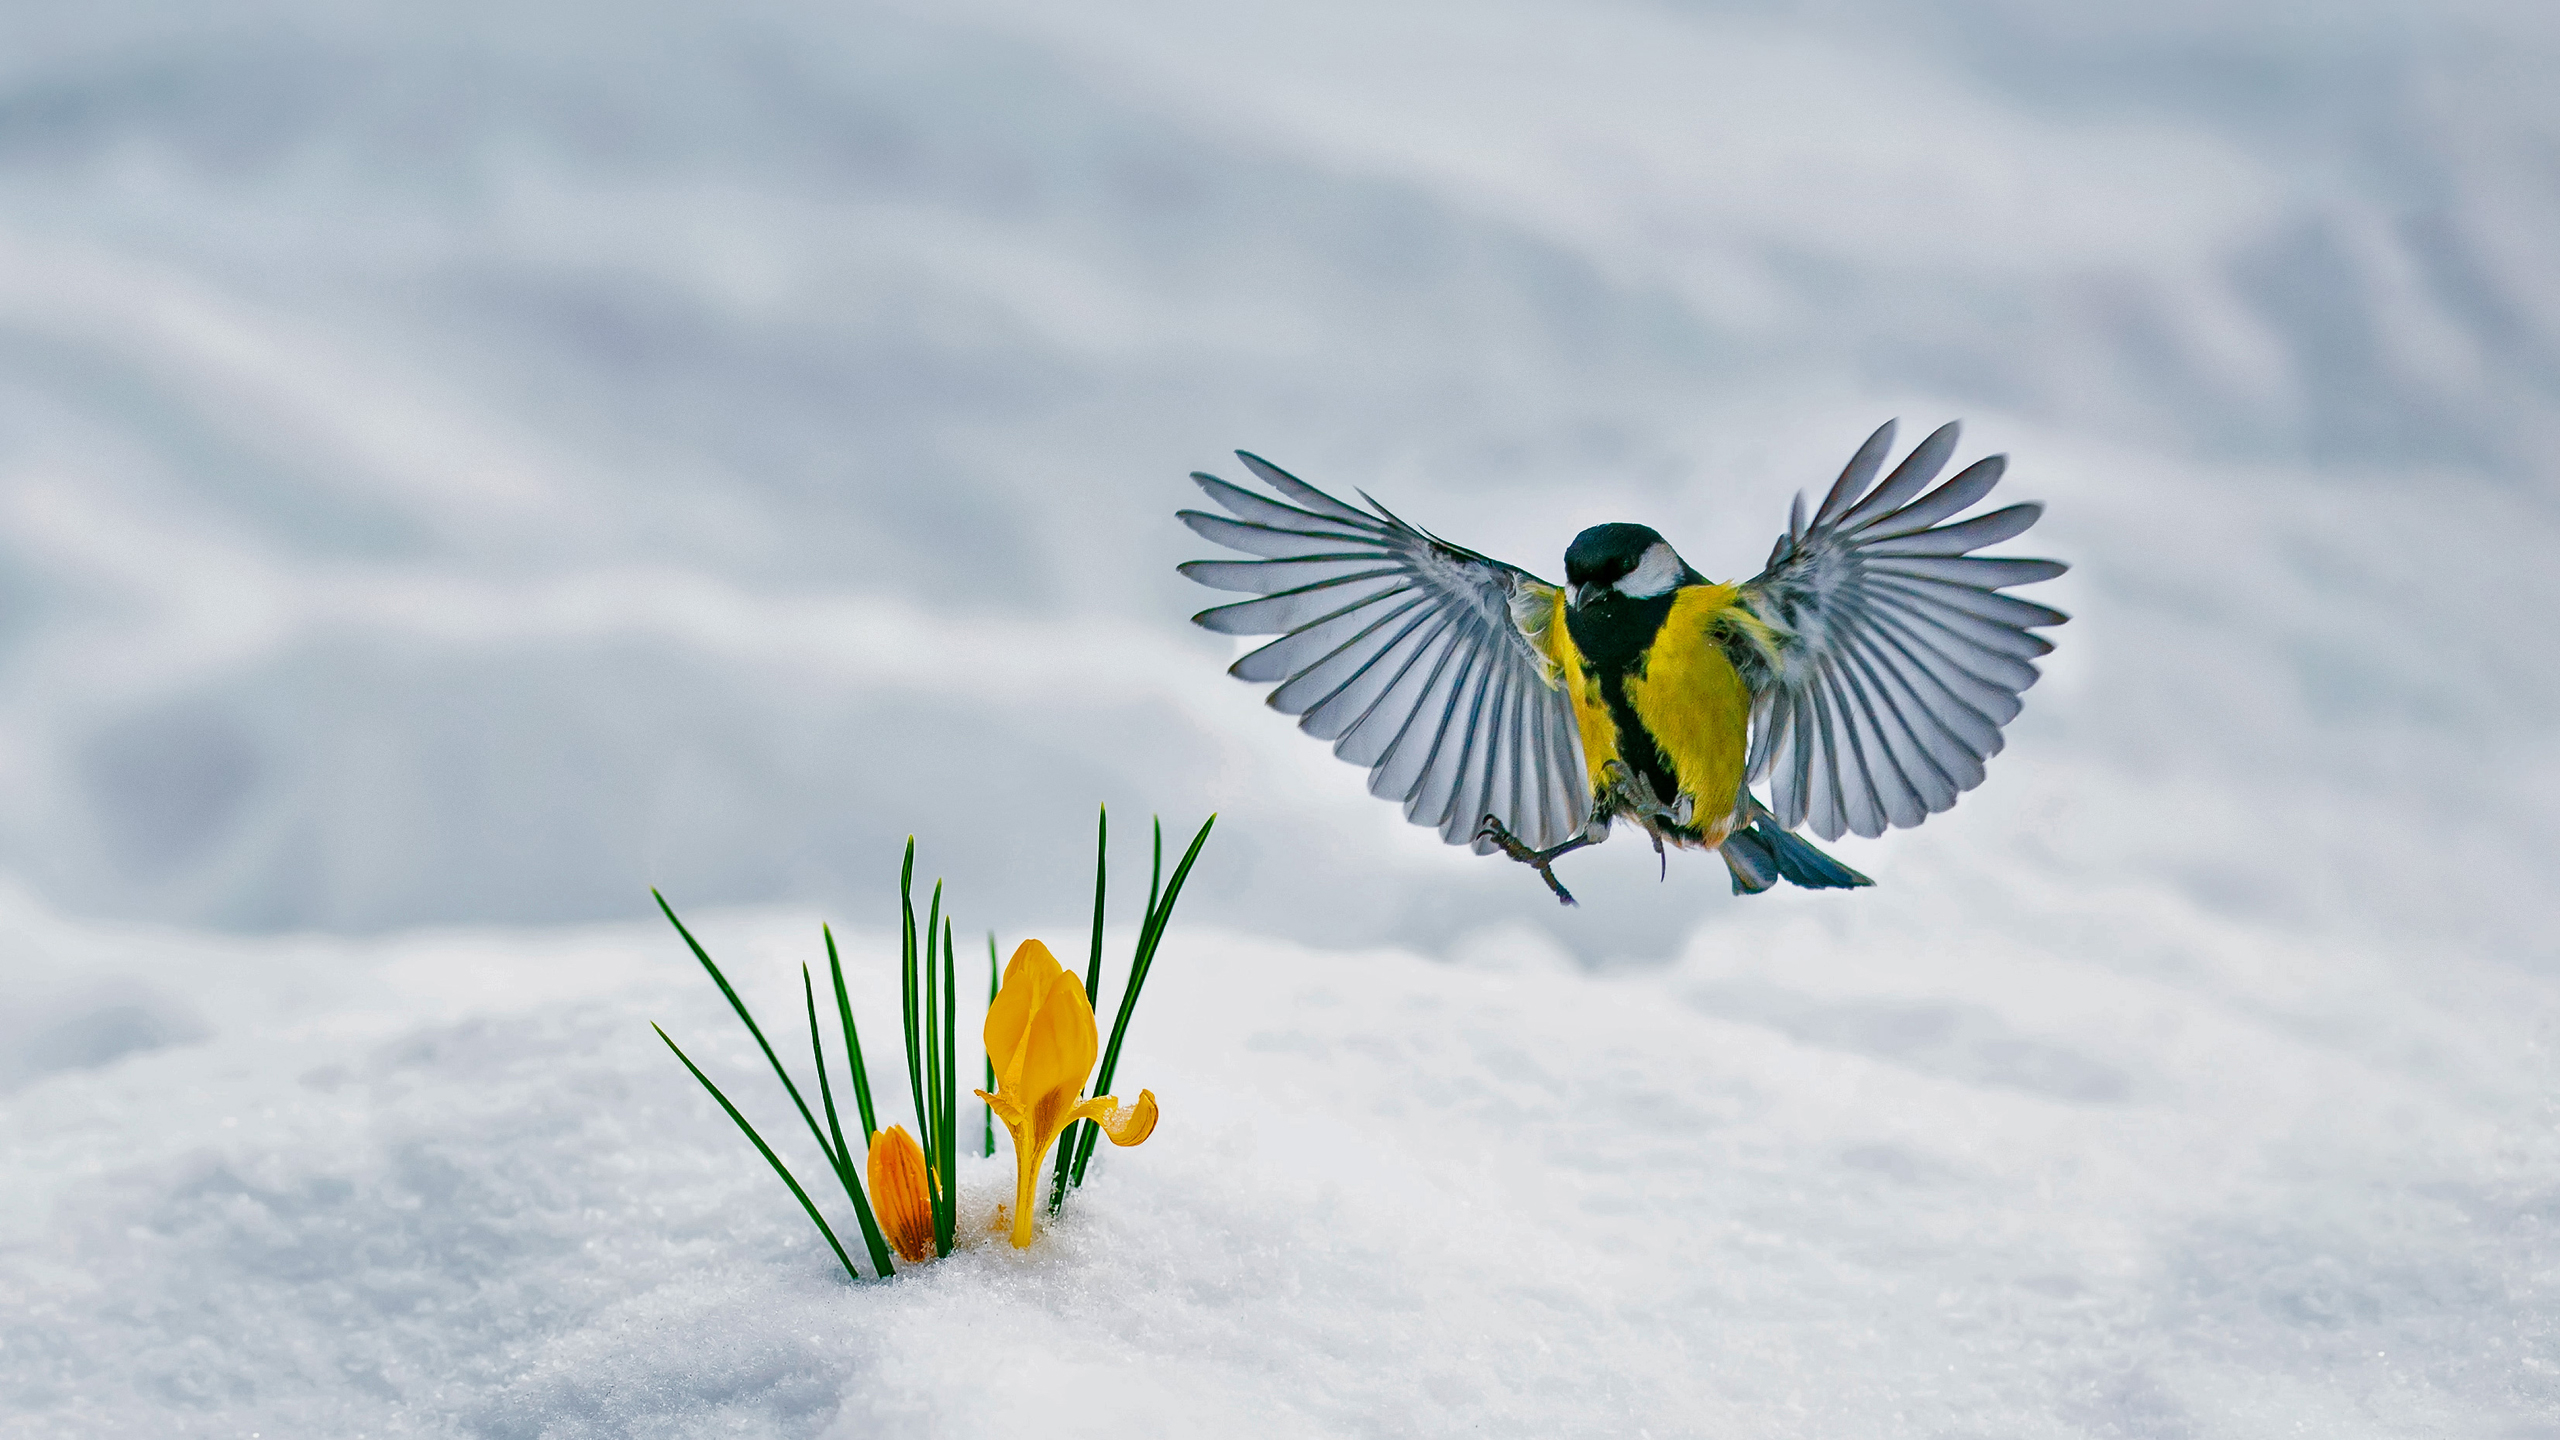 一只山雀飞向一朵伸出雪地的花朵。